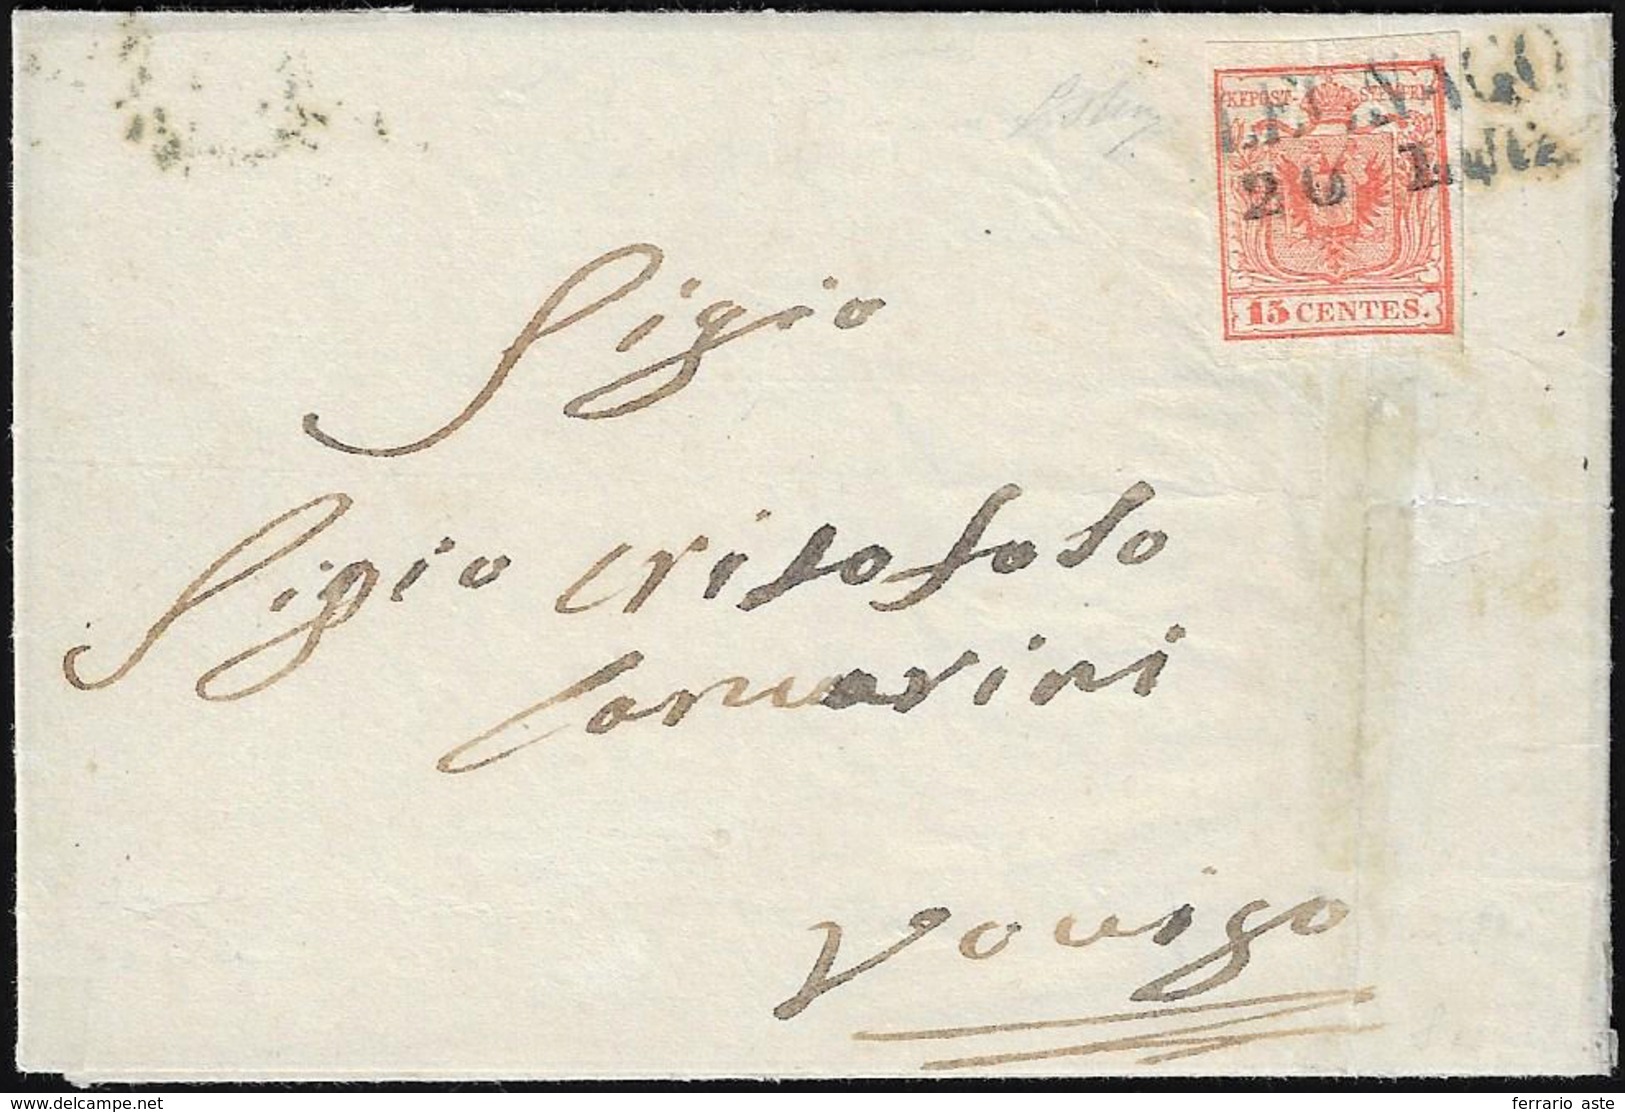 LEGNAGO, SD Azzurro Punti 12 - 15 Cent. (3a), Perfetto, Su Lettera Del 20/7/1850 Per Rovigo. Rara. C... - Lombardo-Venetien